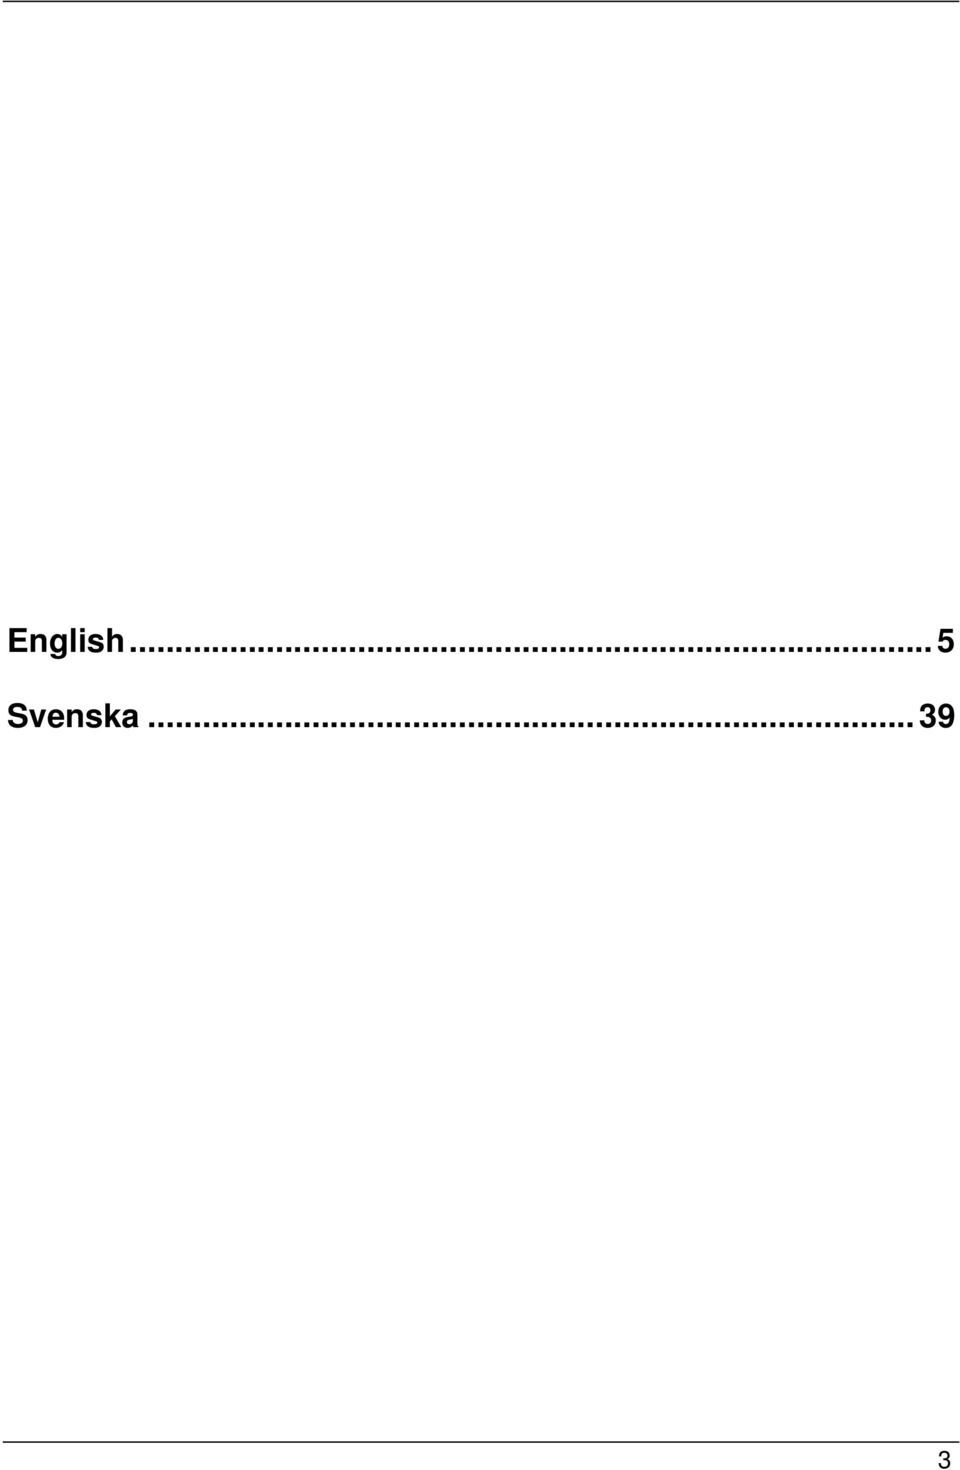 Svenska.